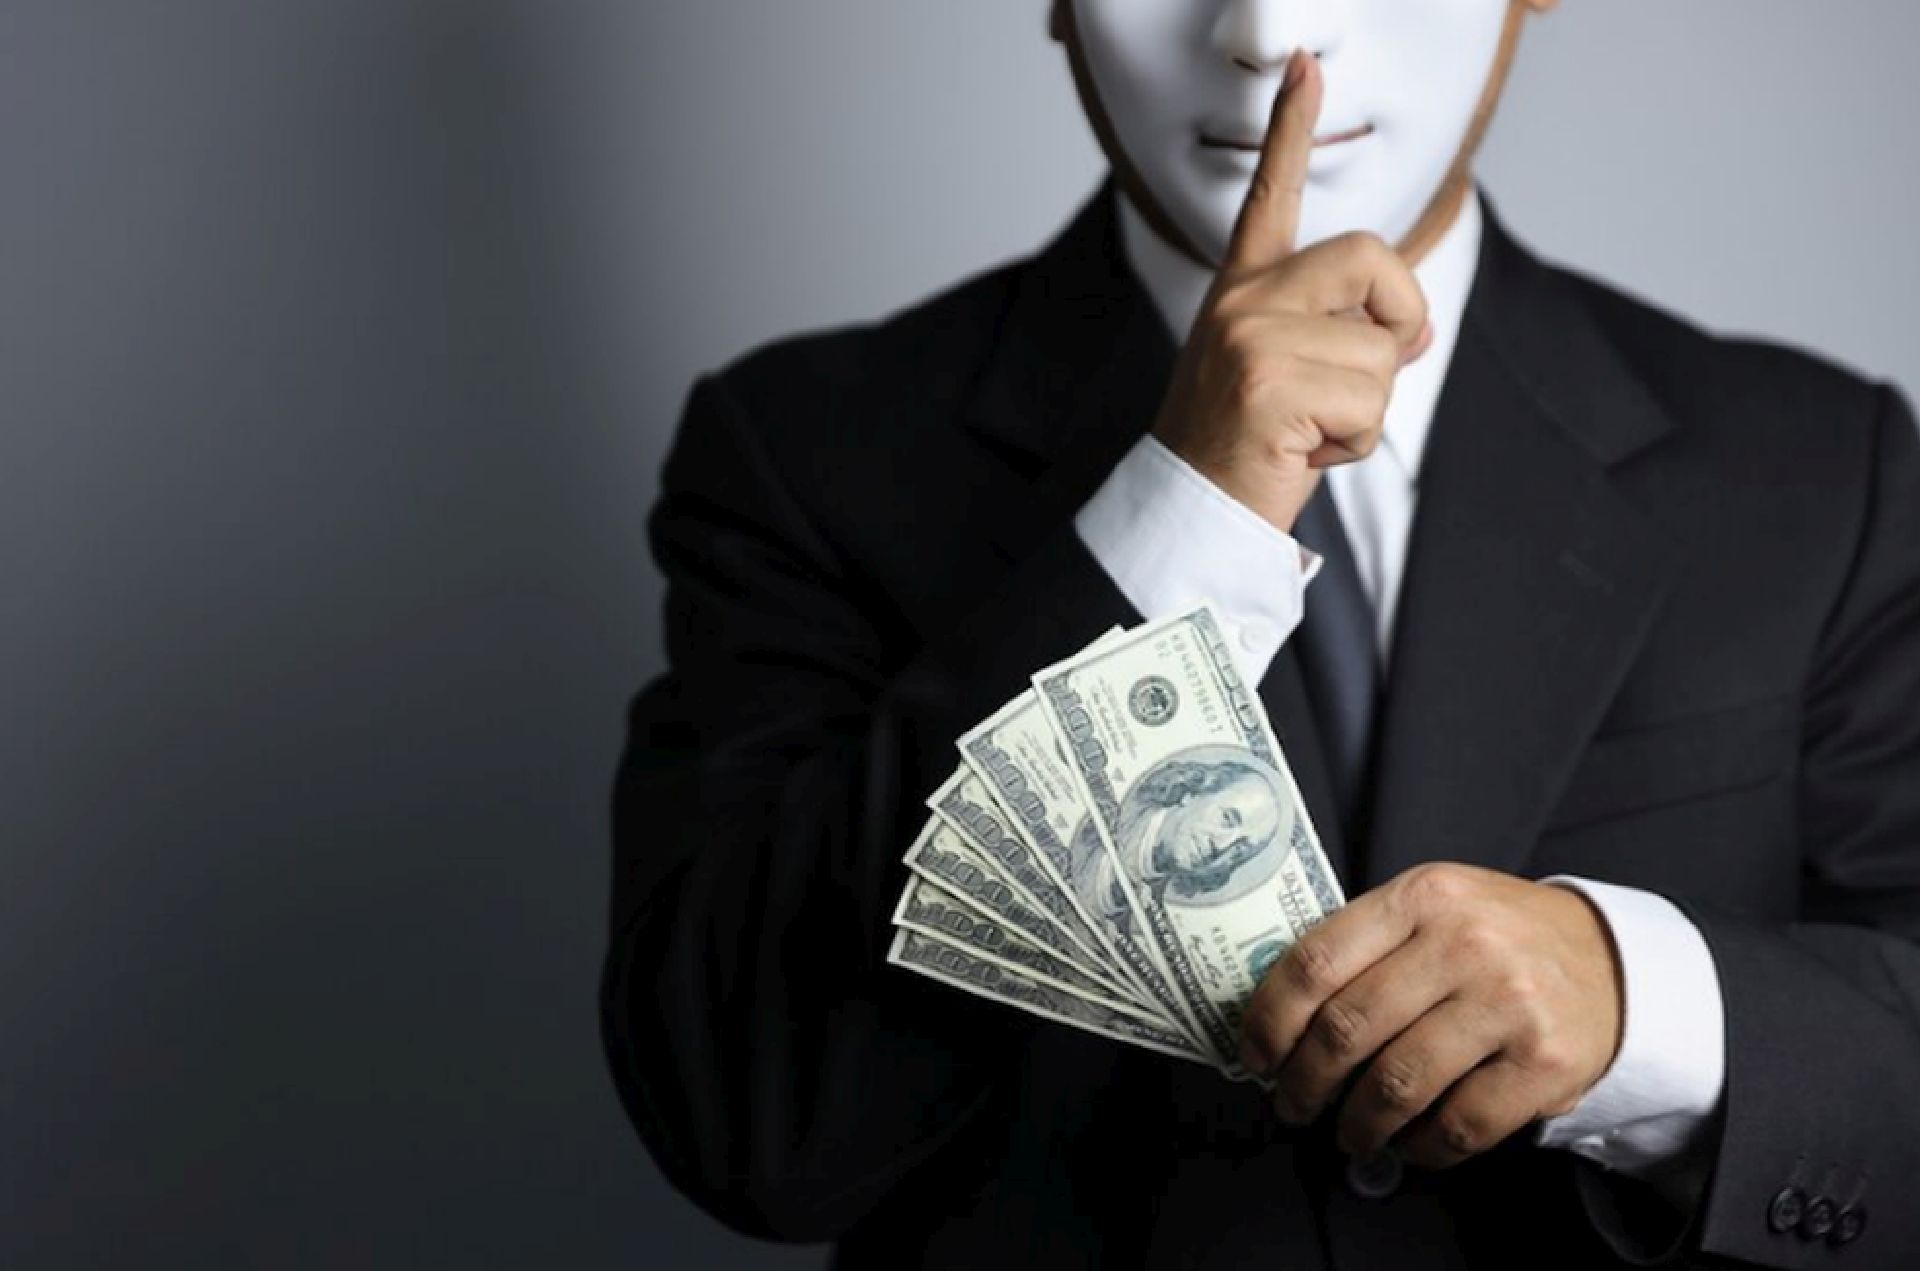 Conoce los 5 mejores tips para evitar los fraudes bancarios